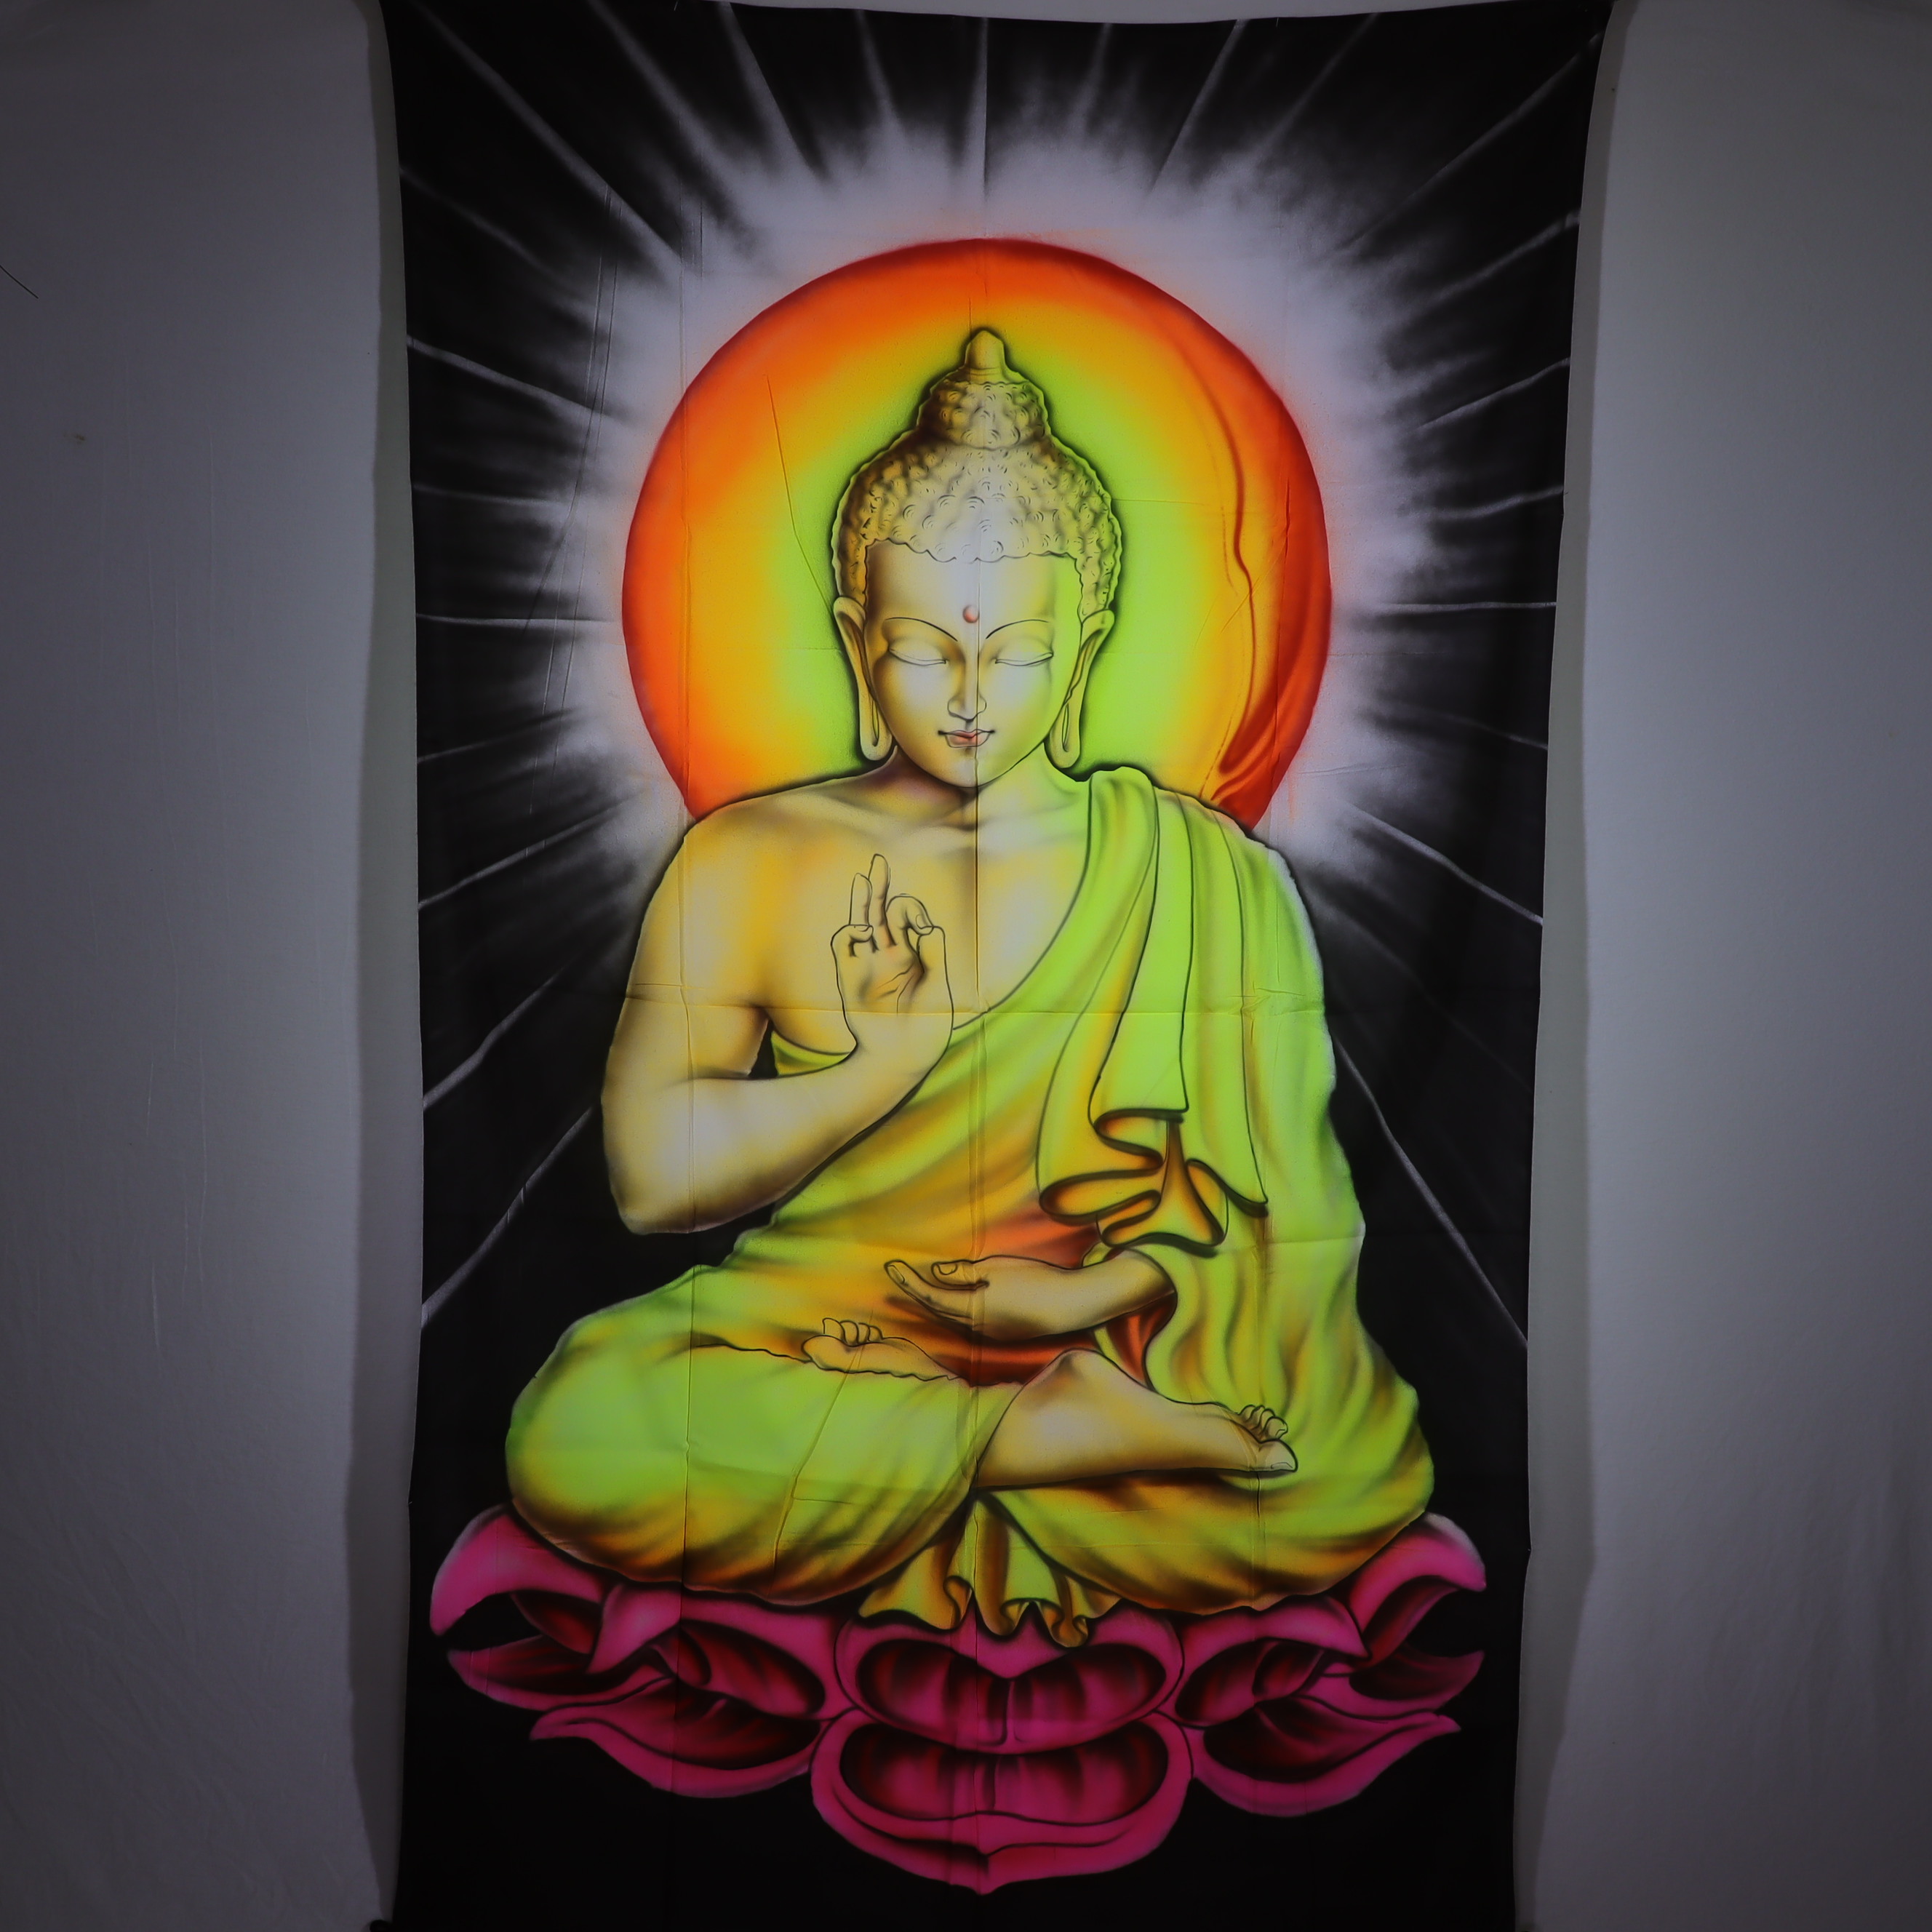 Wandtuch L 120x190 - Buddha der Lehre - aufwendig handgemaltes Schwarzlicht-Tuch - mehrfarbig & UV-aktiv